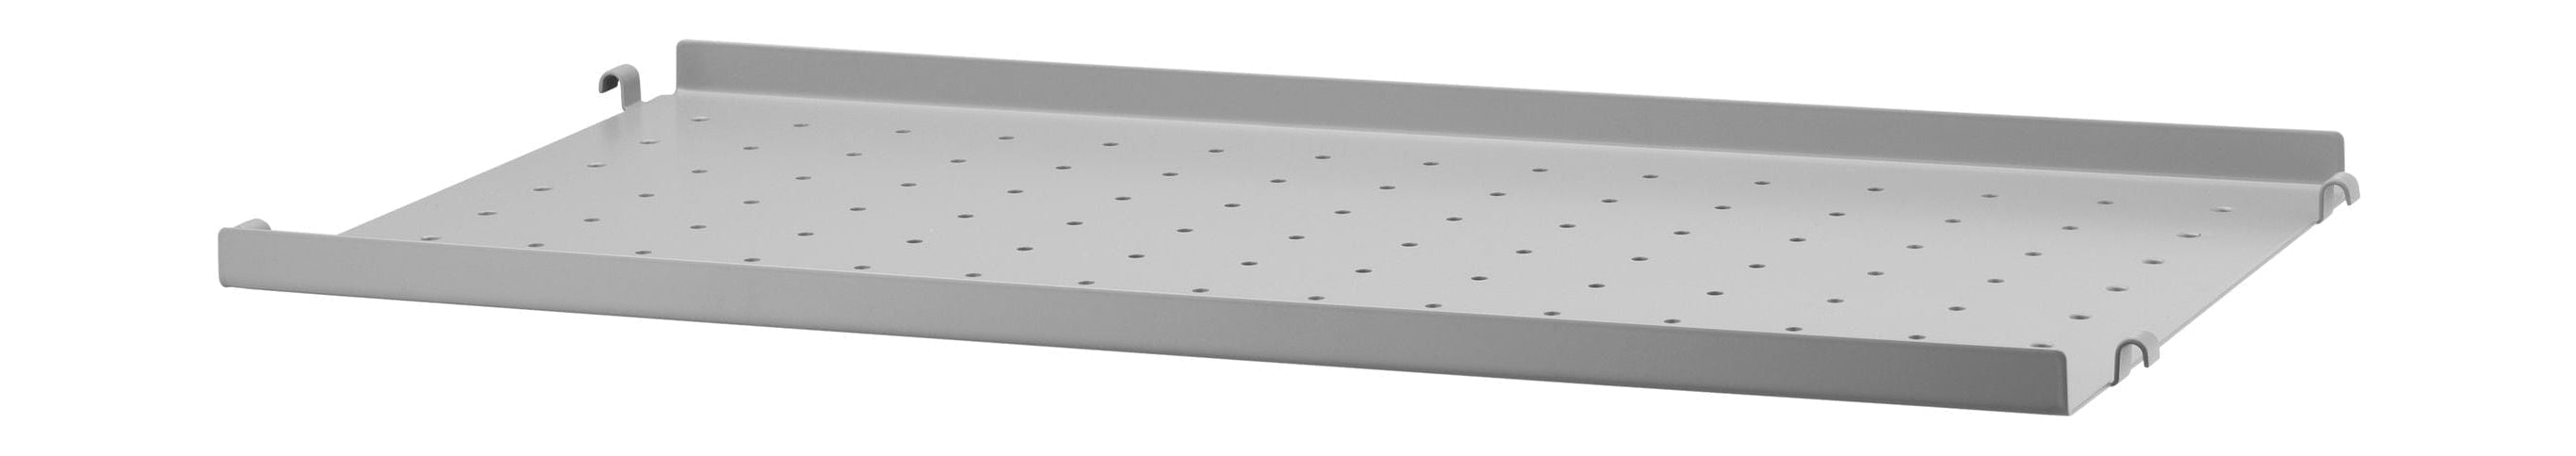 Strengmøbler Strengsystem Metallhylle med lavkant 30x58 cm, grå